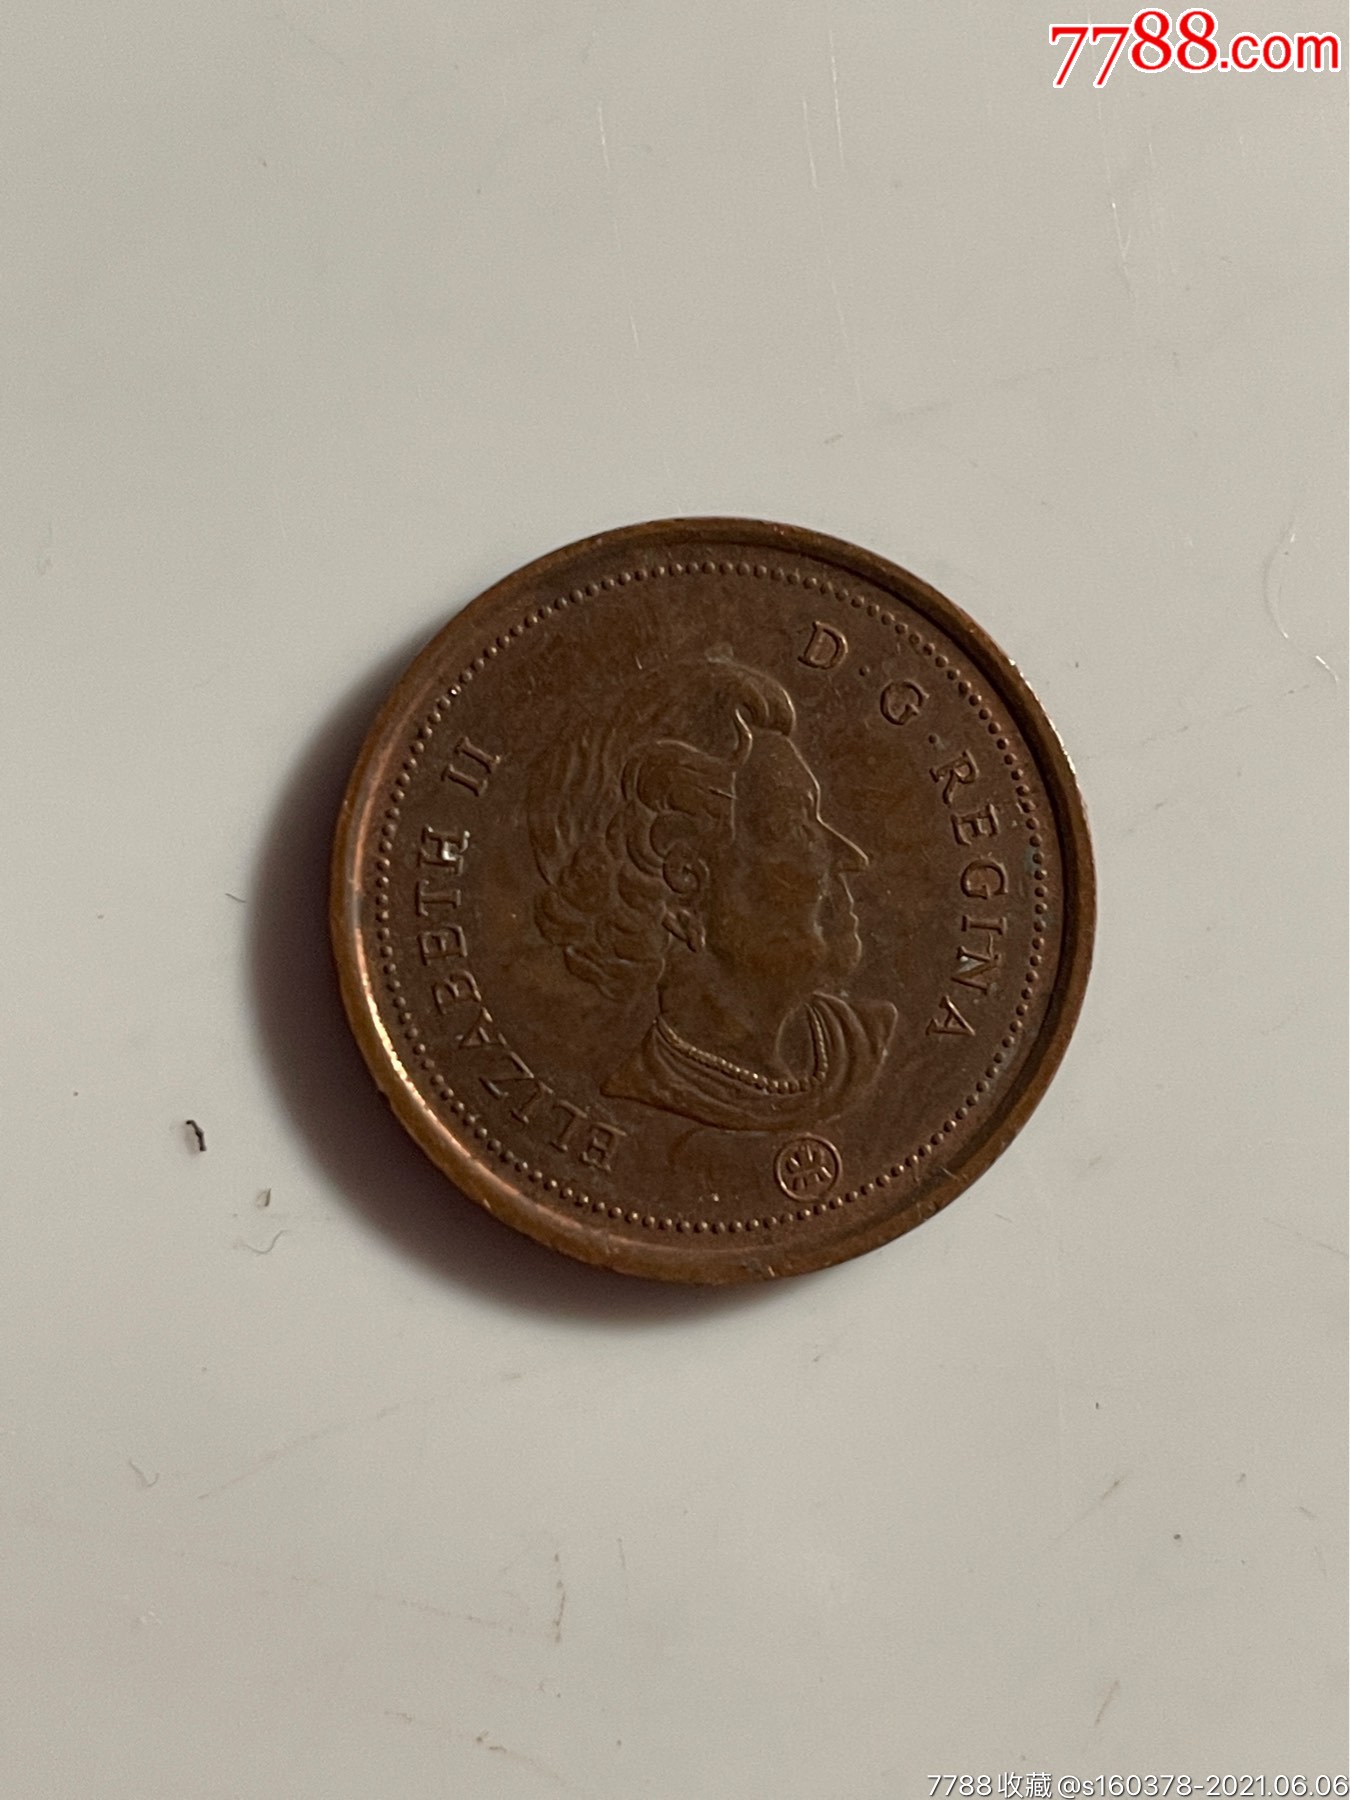 2006年加拿大枫叶1分铜币外国硬币